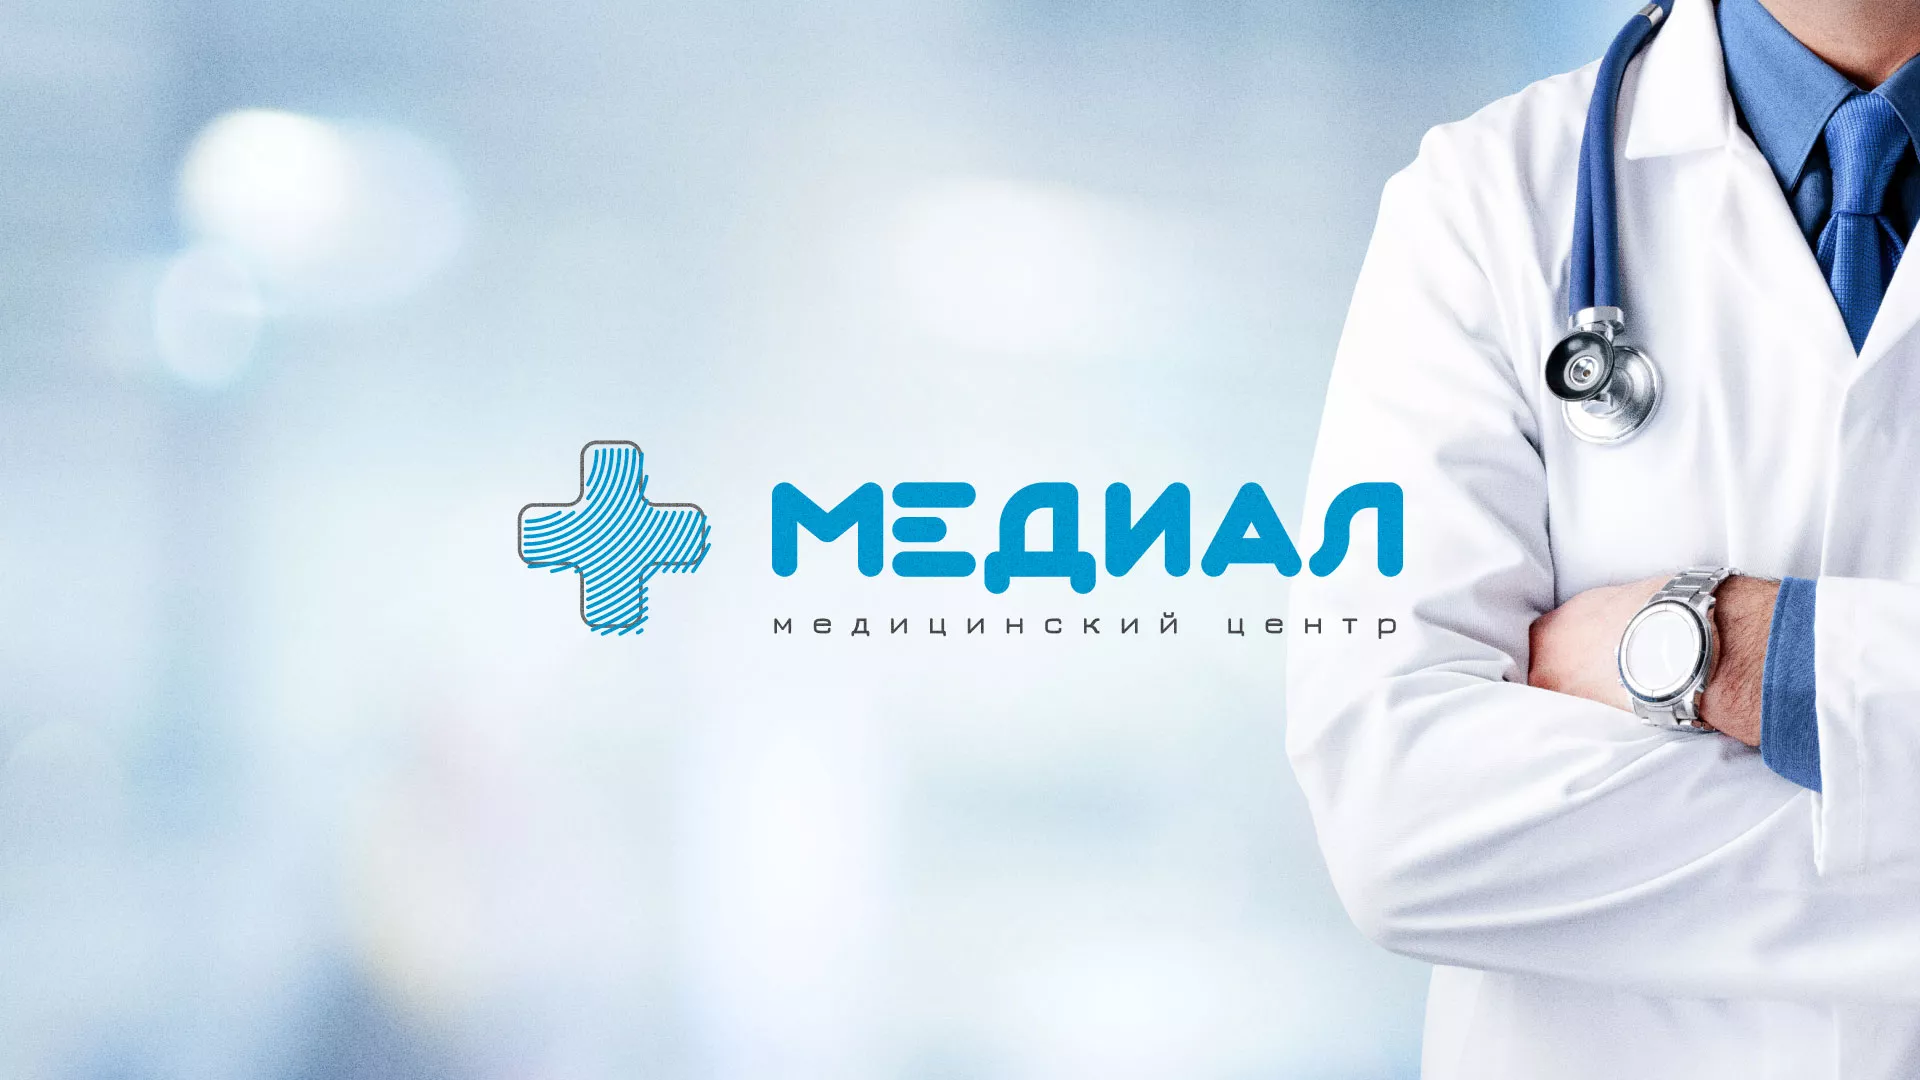 Создание сайта для медицинского центра «Медиал» в Пушкине